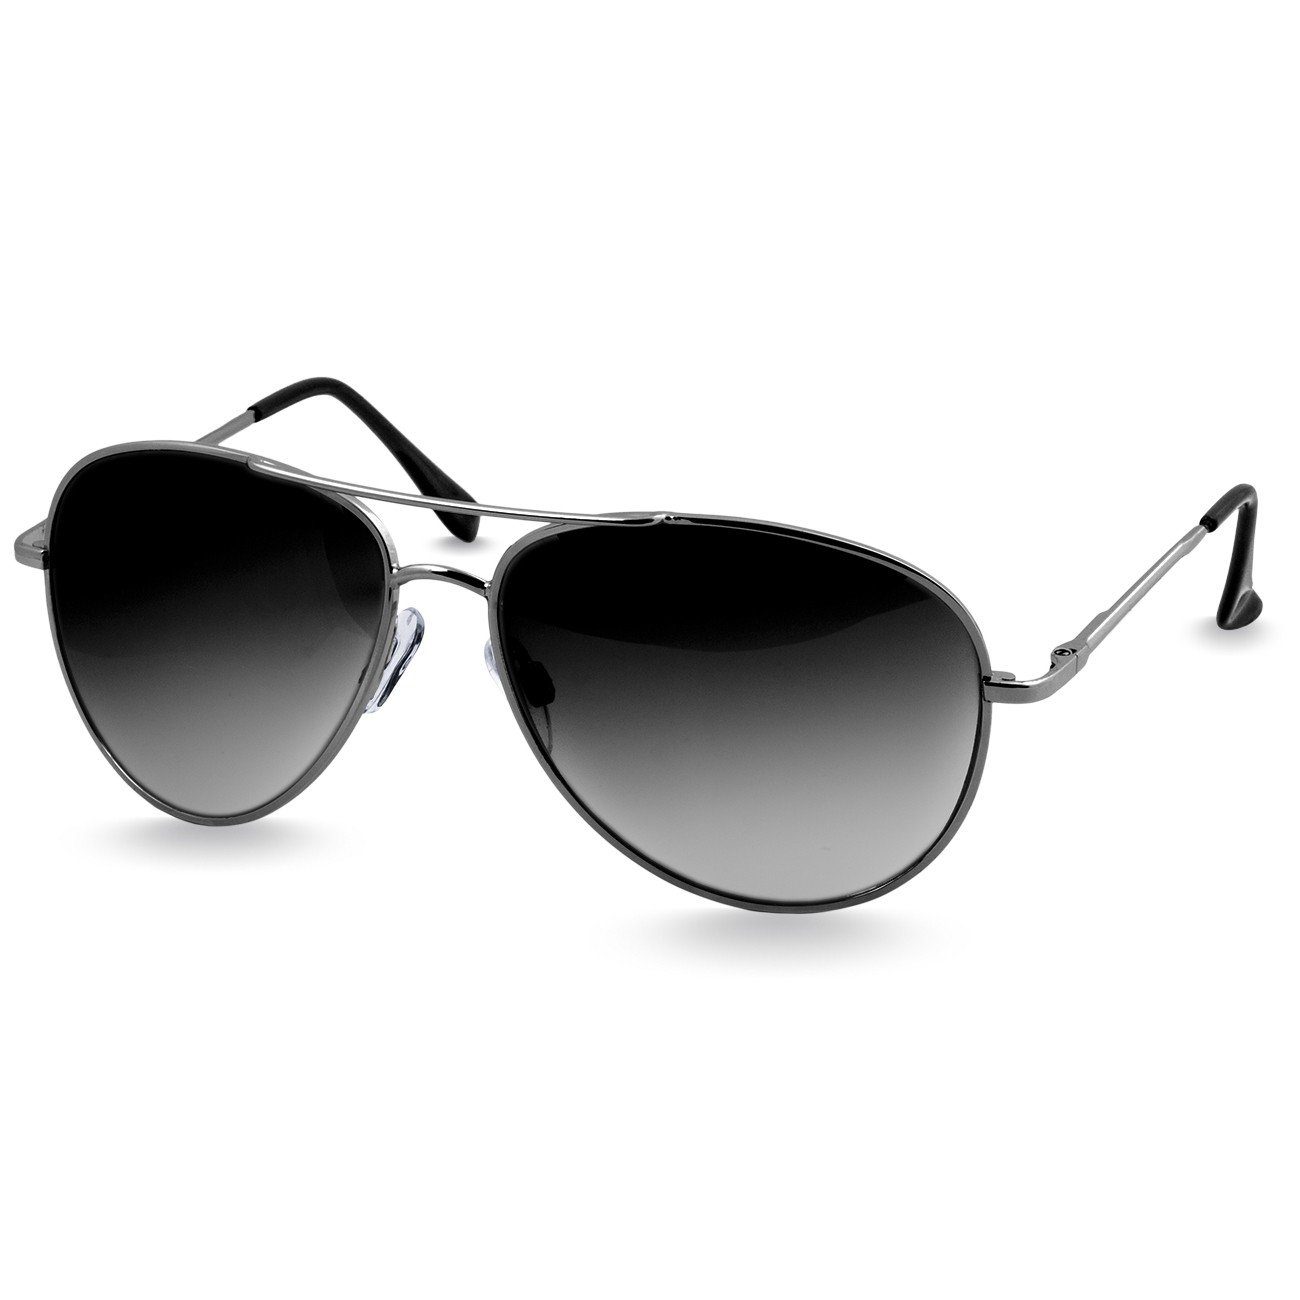 SG013 silber getönt Caspar / Sonnenbrille Unisex schwarz Retro Pilotenbrille klassische